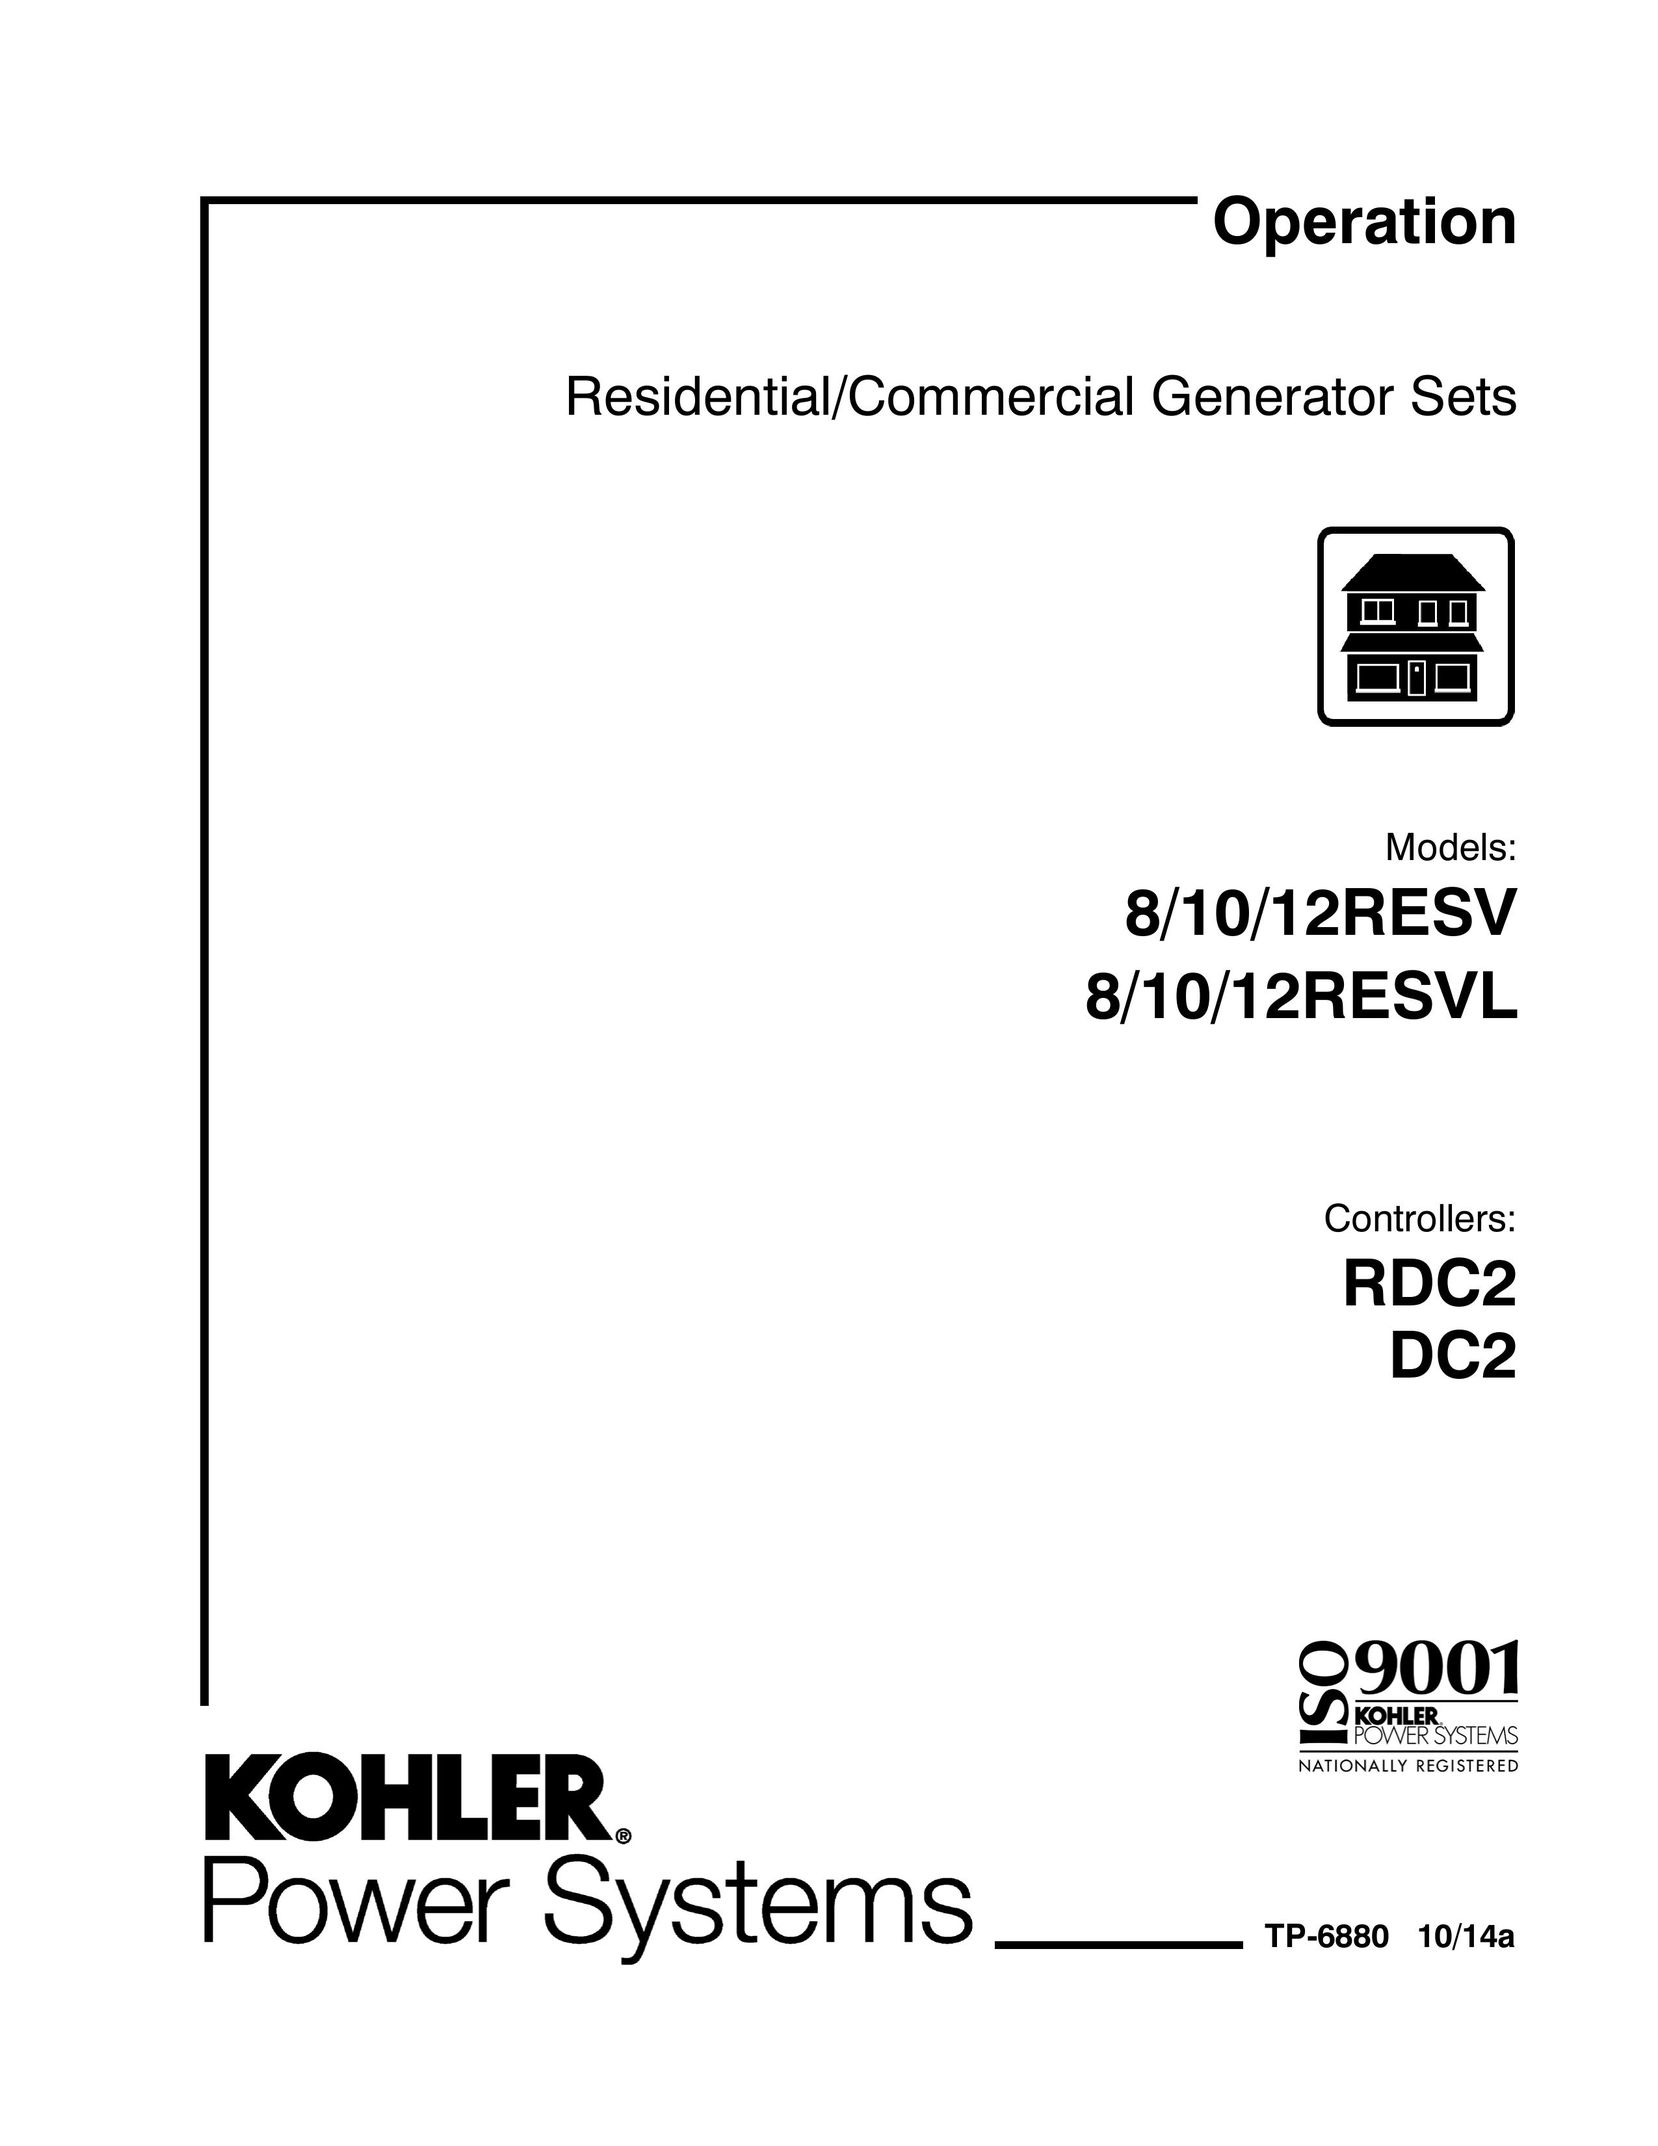 Kohler 8/10/12RESVL Welding System User Manual